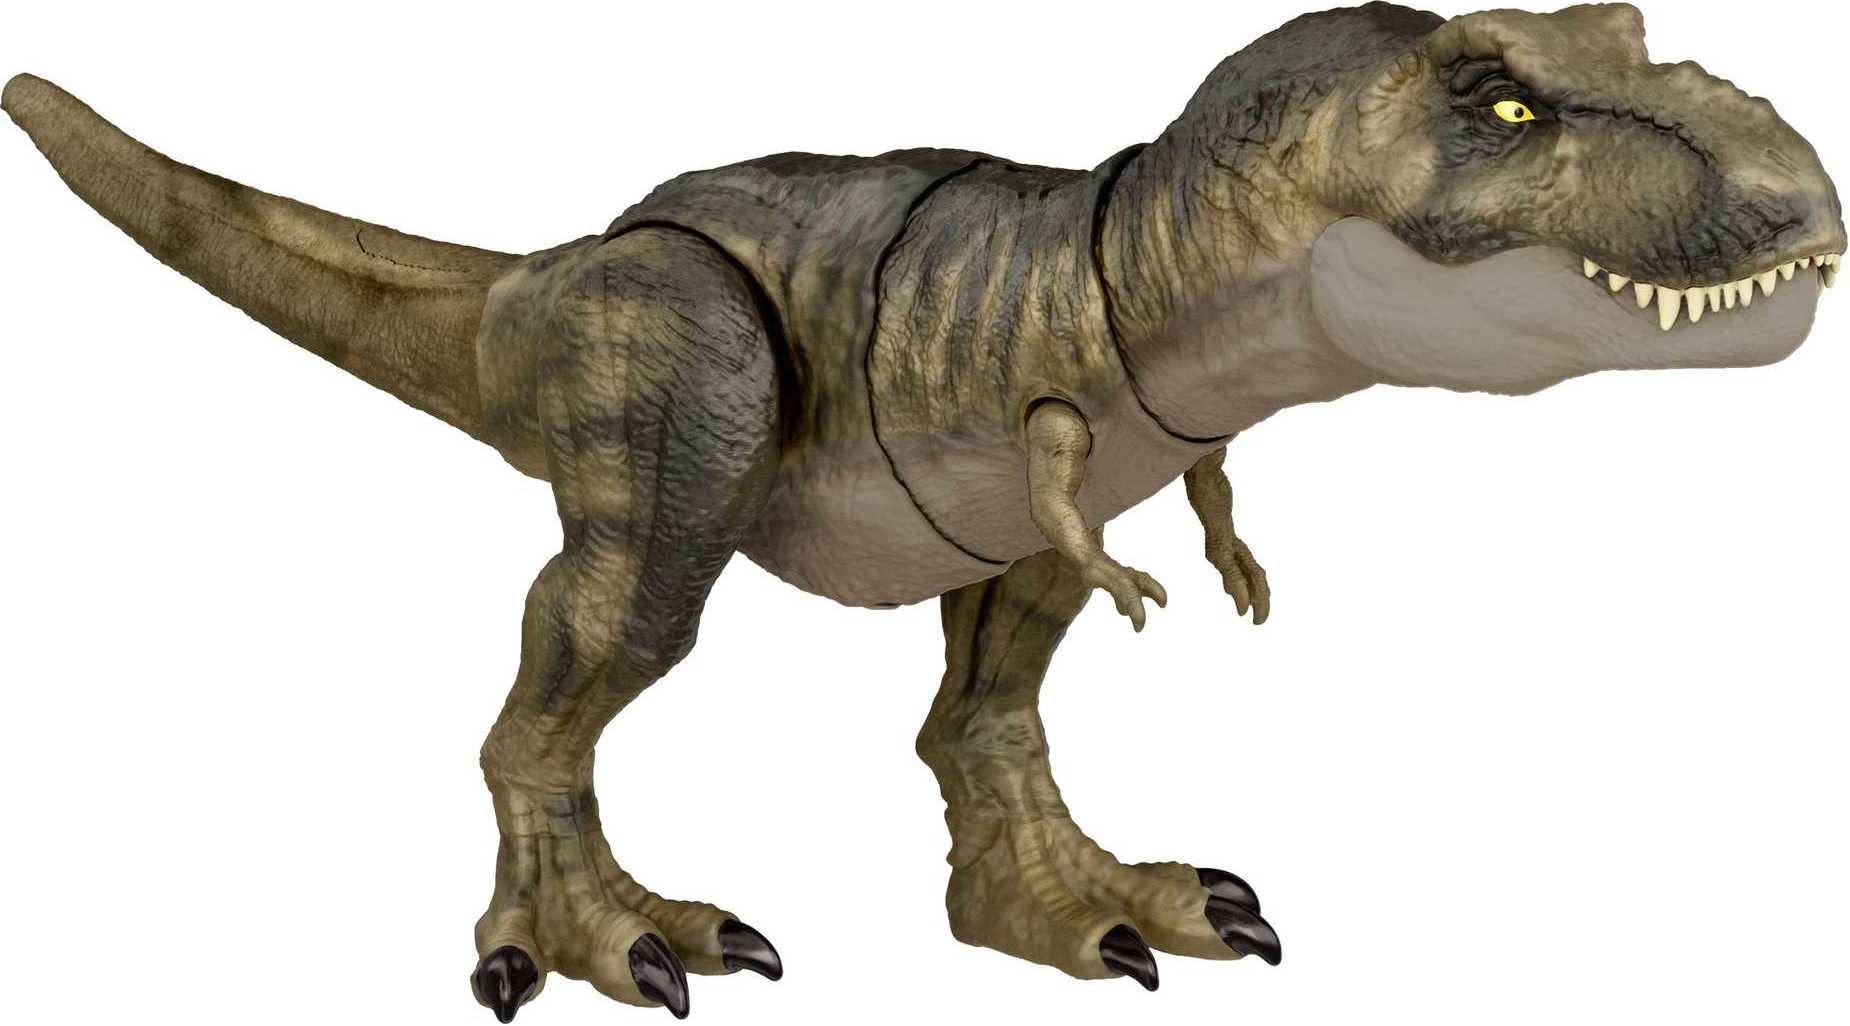 Mattel Jurassic World Toys Dominion Thrash â€˜N Devour Tyrannosaurus Rex Action Figure with Sound & Motion, T Rex Dinosaur Toy